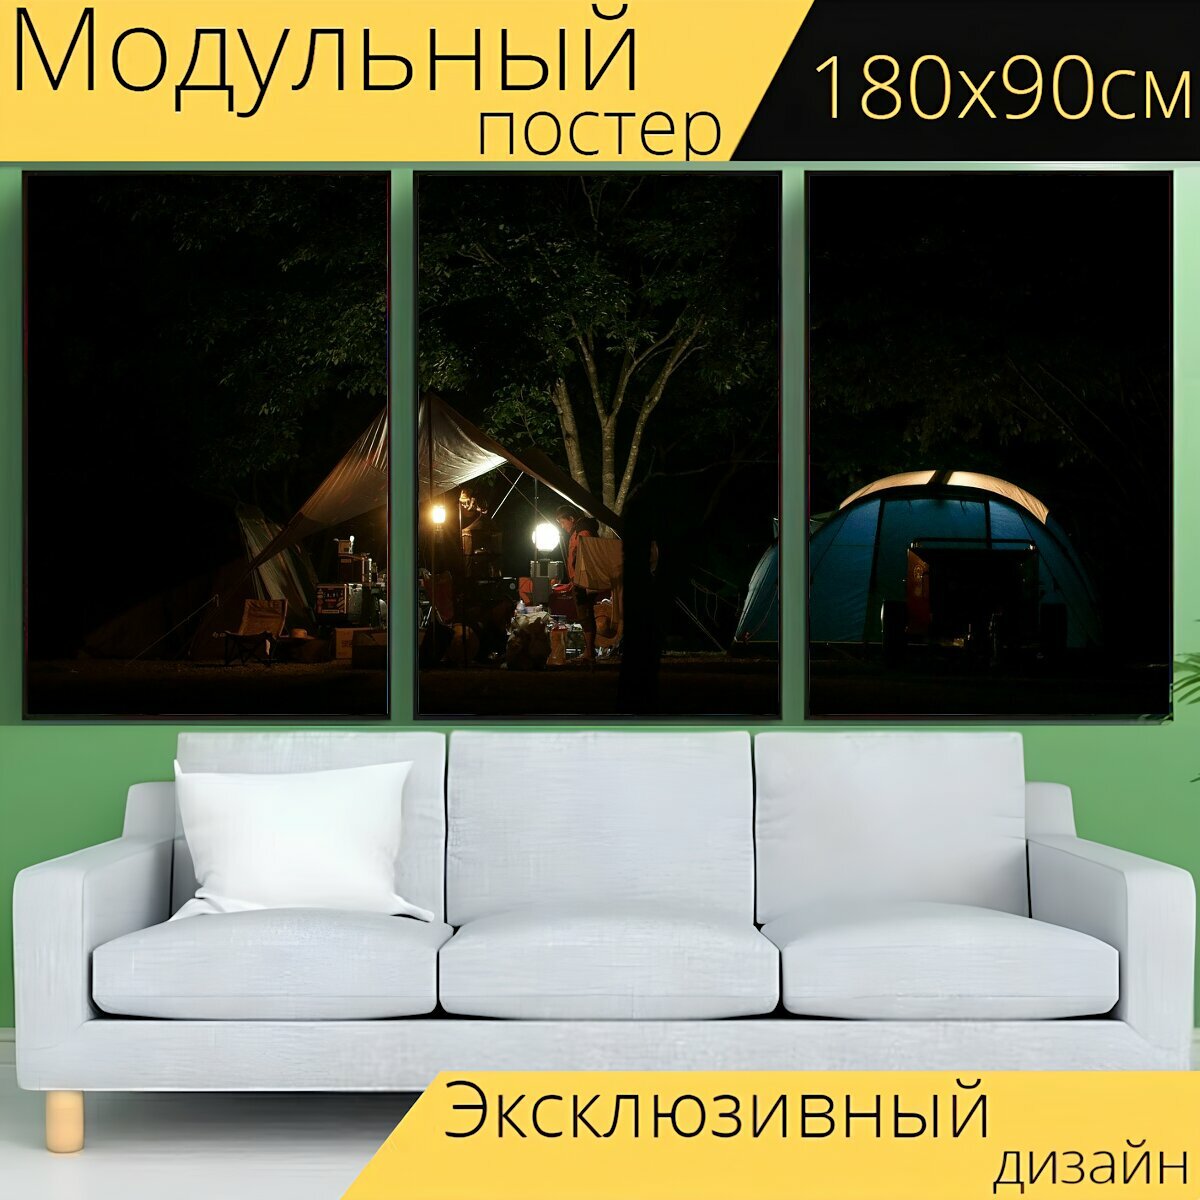 Модульный постер "Ночь, отдых на природе, свет" 180 x 90 см. для интерьера